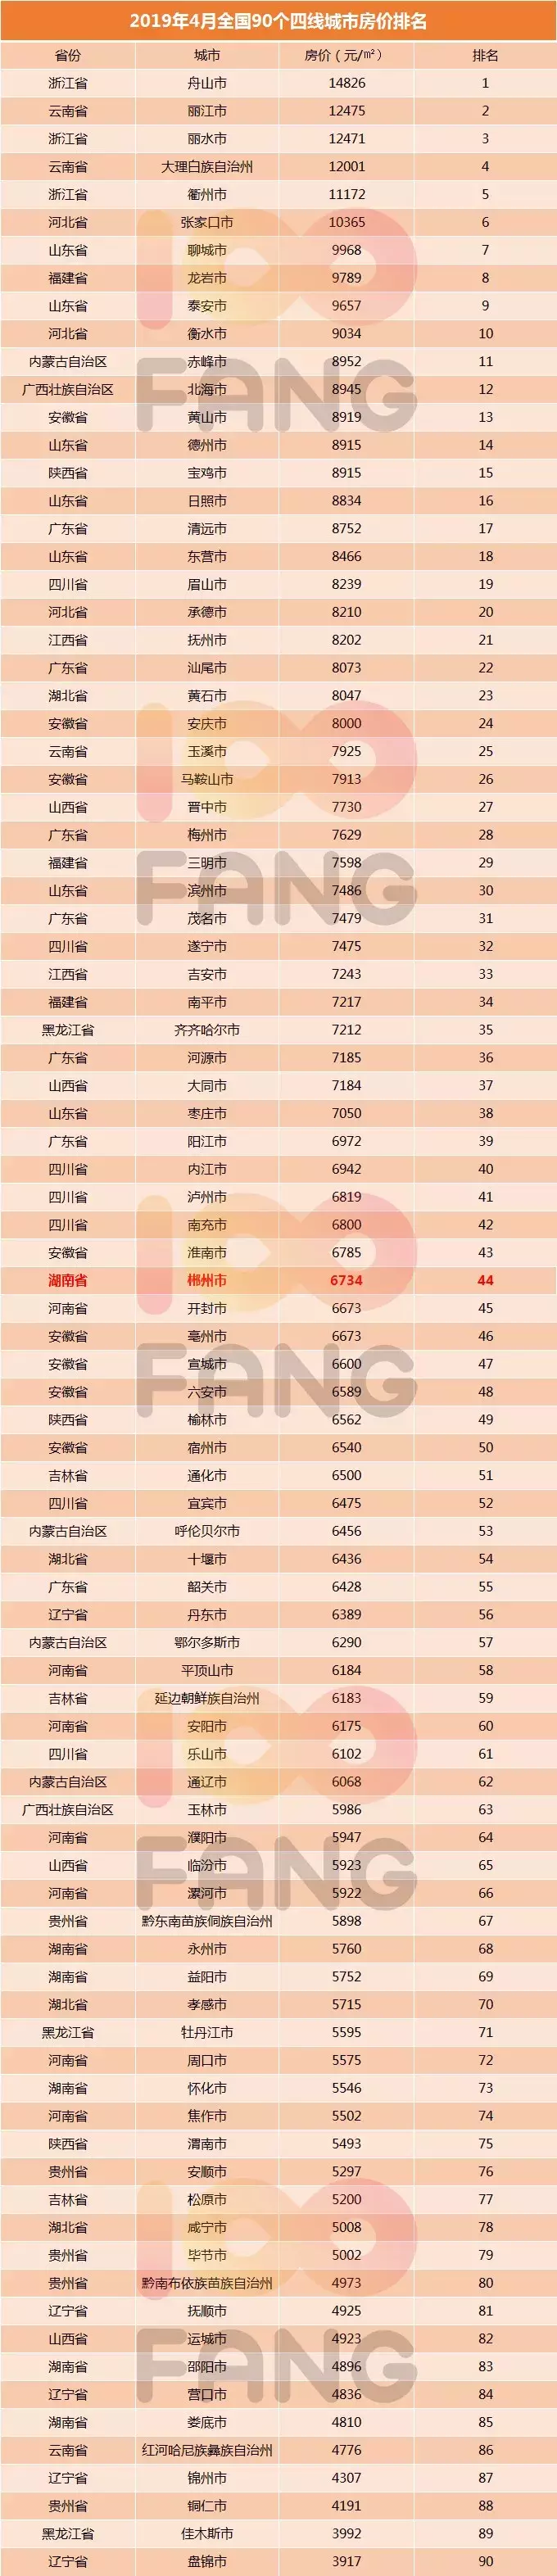 中国城市房价排行榜_中国专辑销量排行100榜_2010年 全国城市房价排行